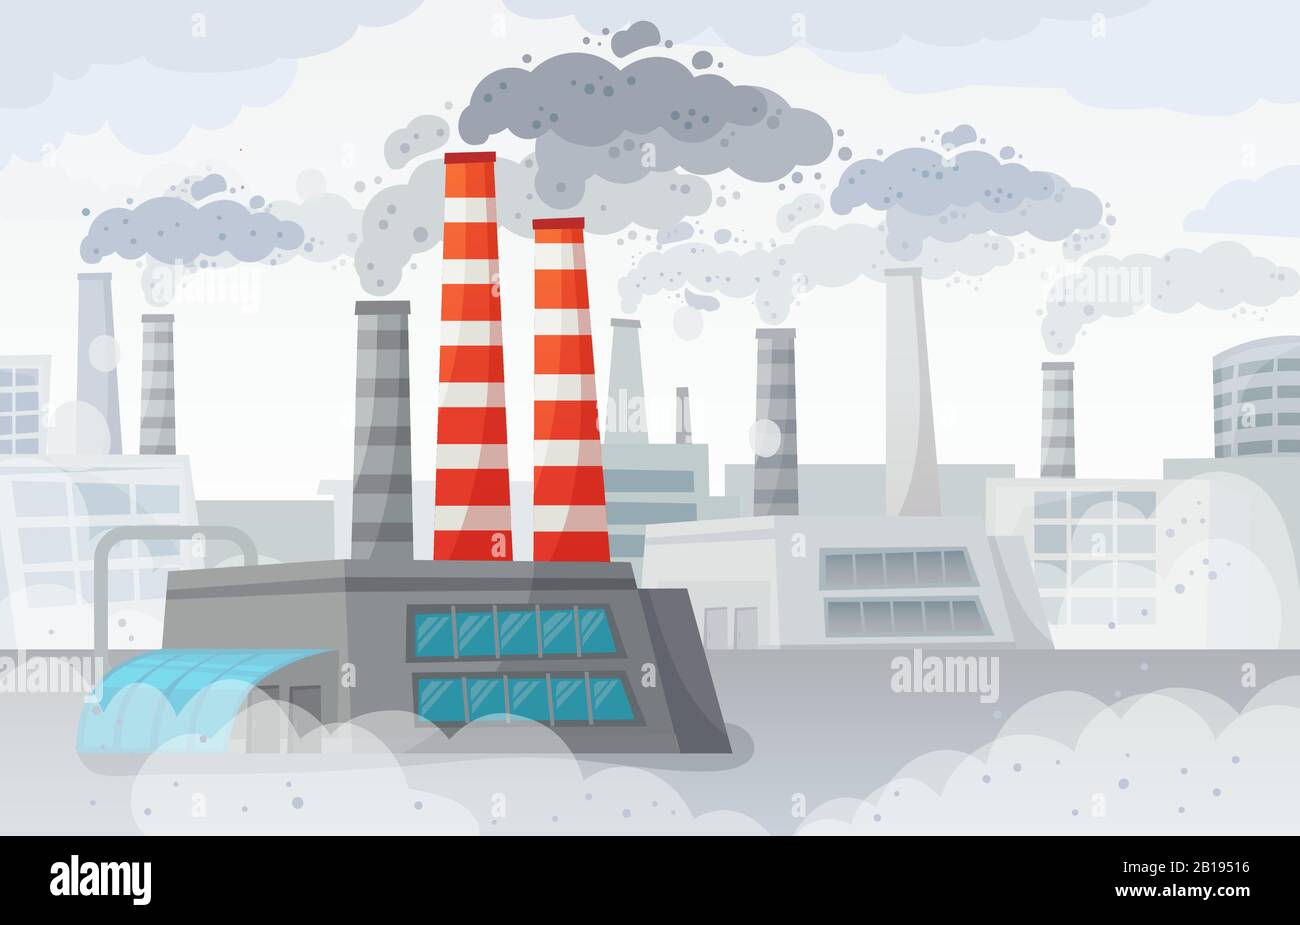 Luftverschmutzung durch die Fabrik. Belastete Umwelt, Industriesmog und Industrie Rauchwolken Vektorgrafiken Stock Vektor